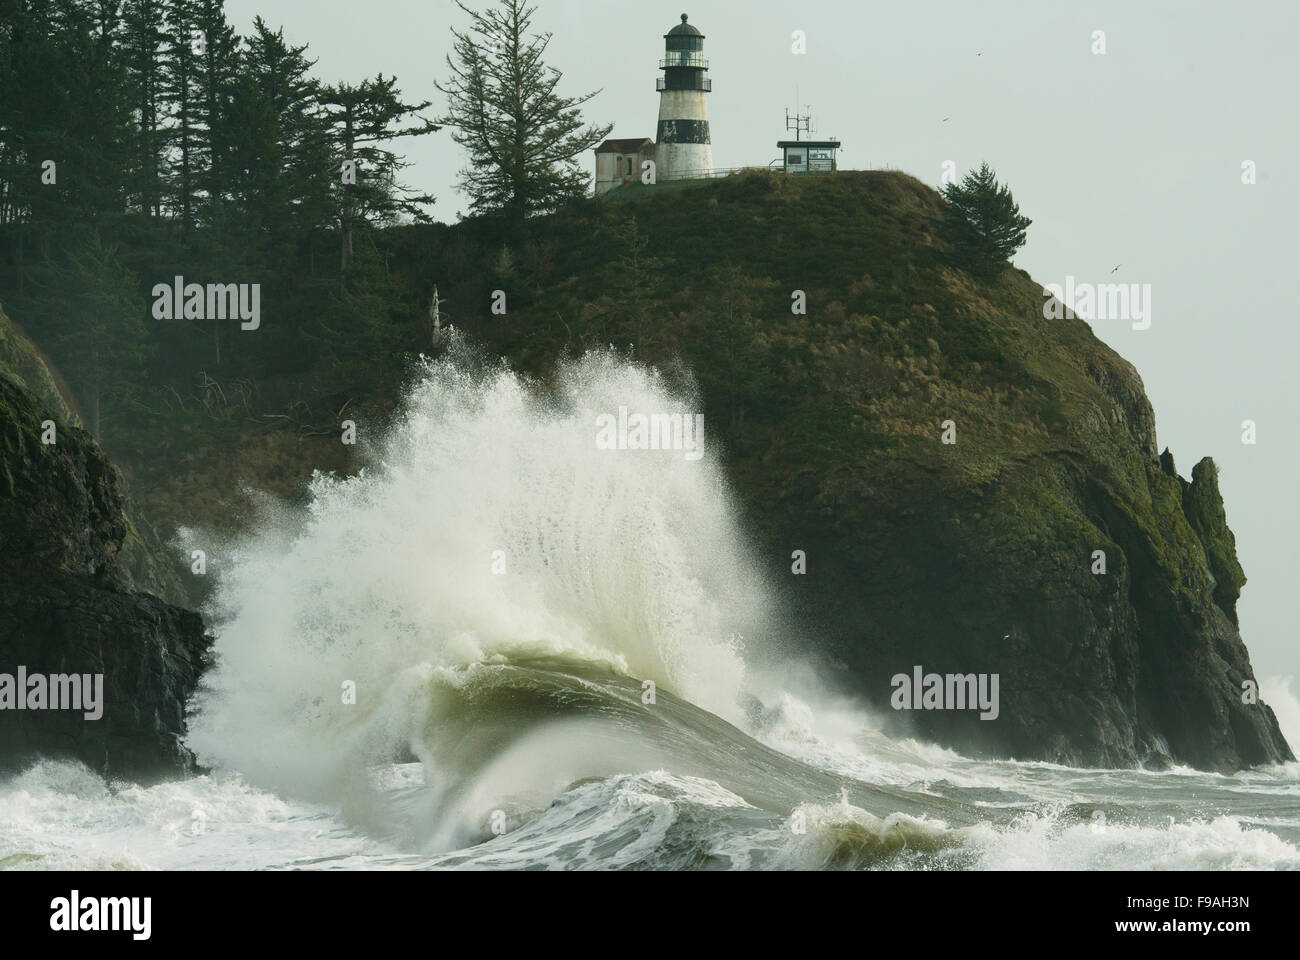 Grandi onde crash in Cape delusione alla foce del fiume Columbia, dicembre 2015, nello Stato di Washington STATI UNITI D'AMERICA Foto Stock